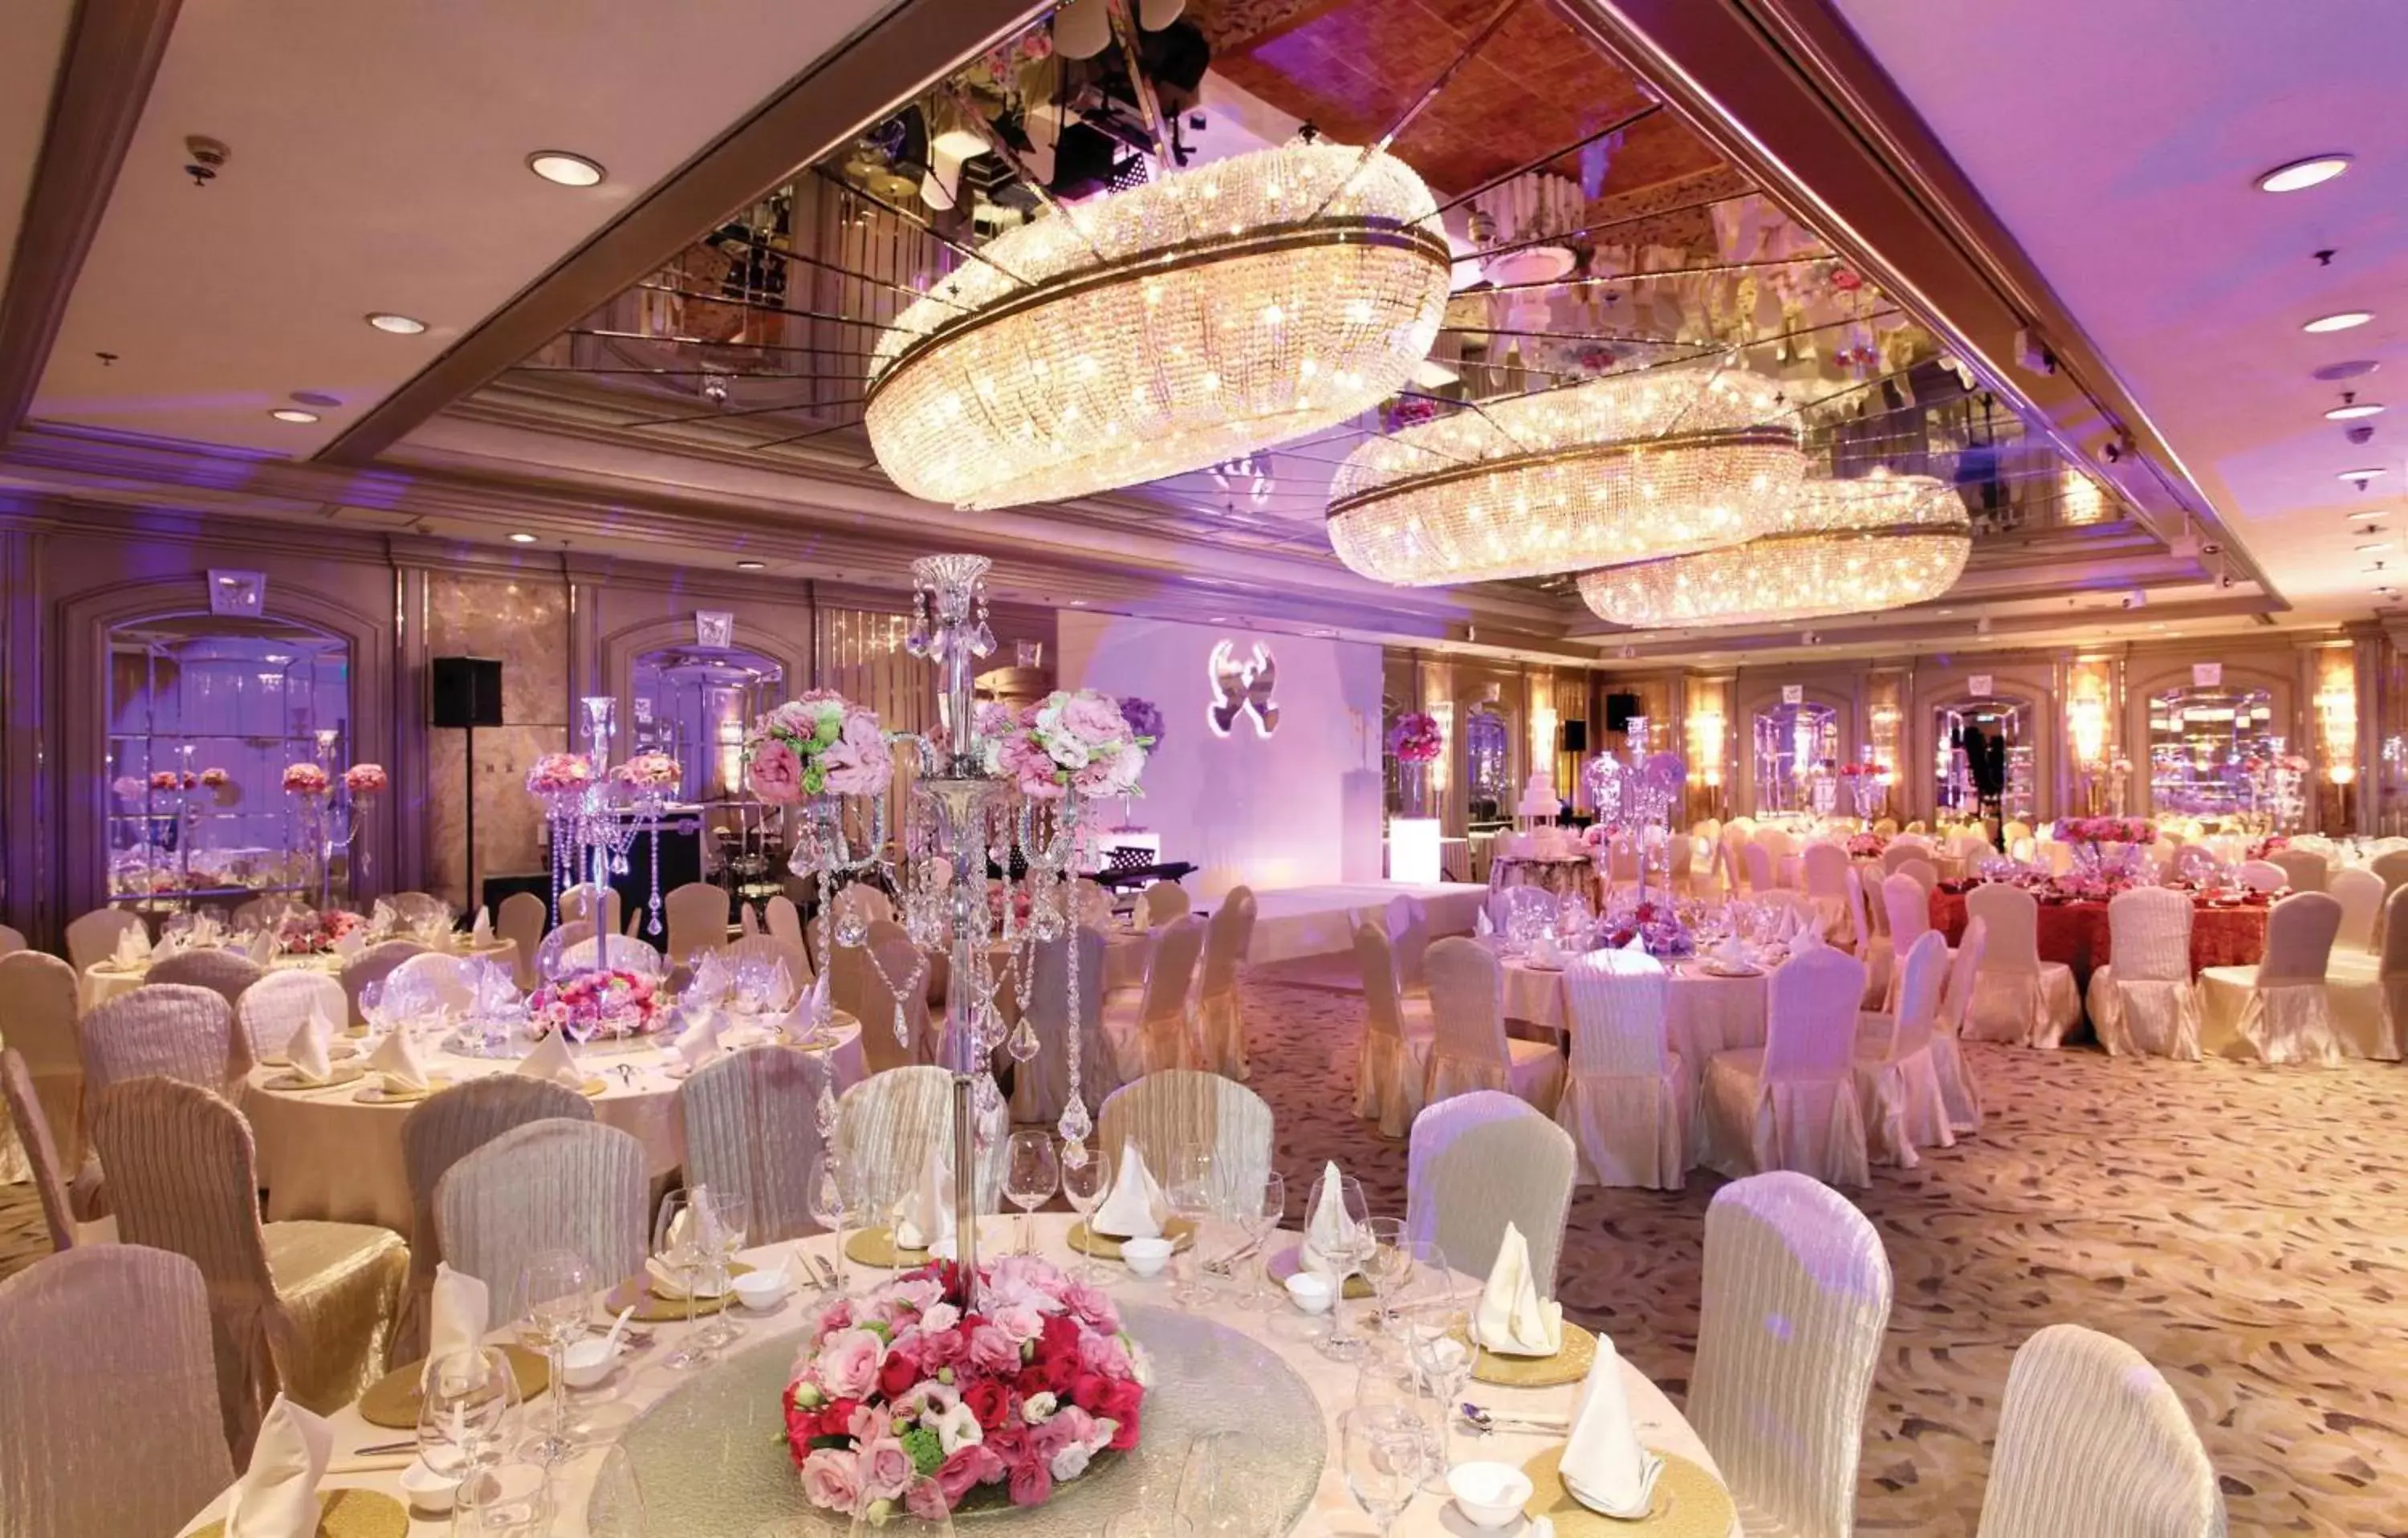 Banquet/Function facilities, Banquet Facilities in Regal Hongkong Hotel